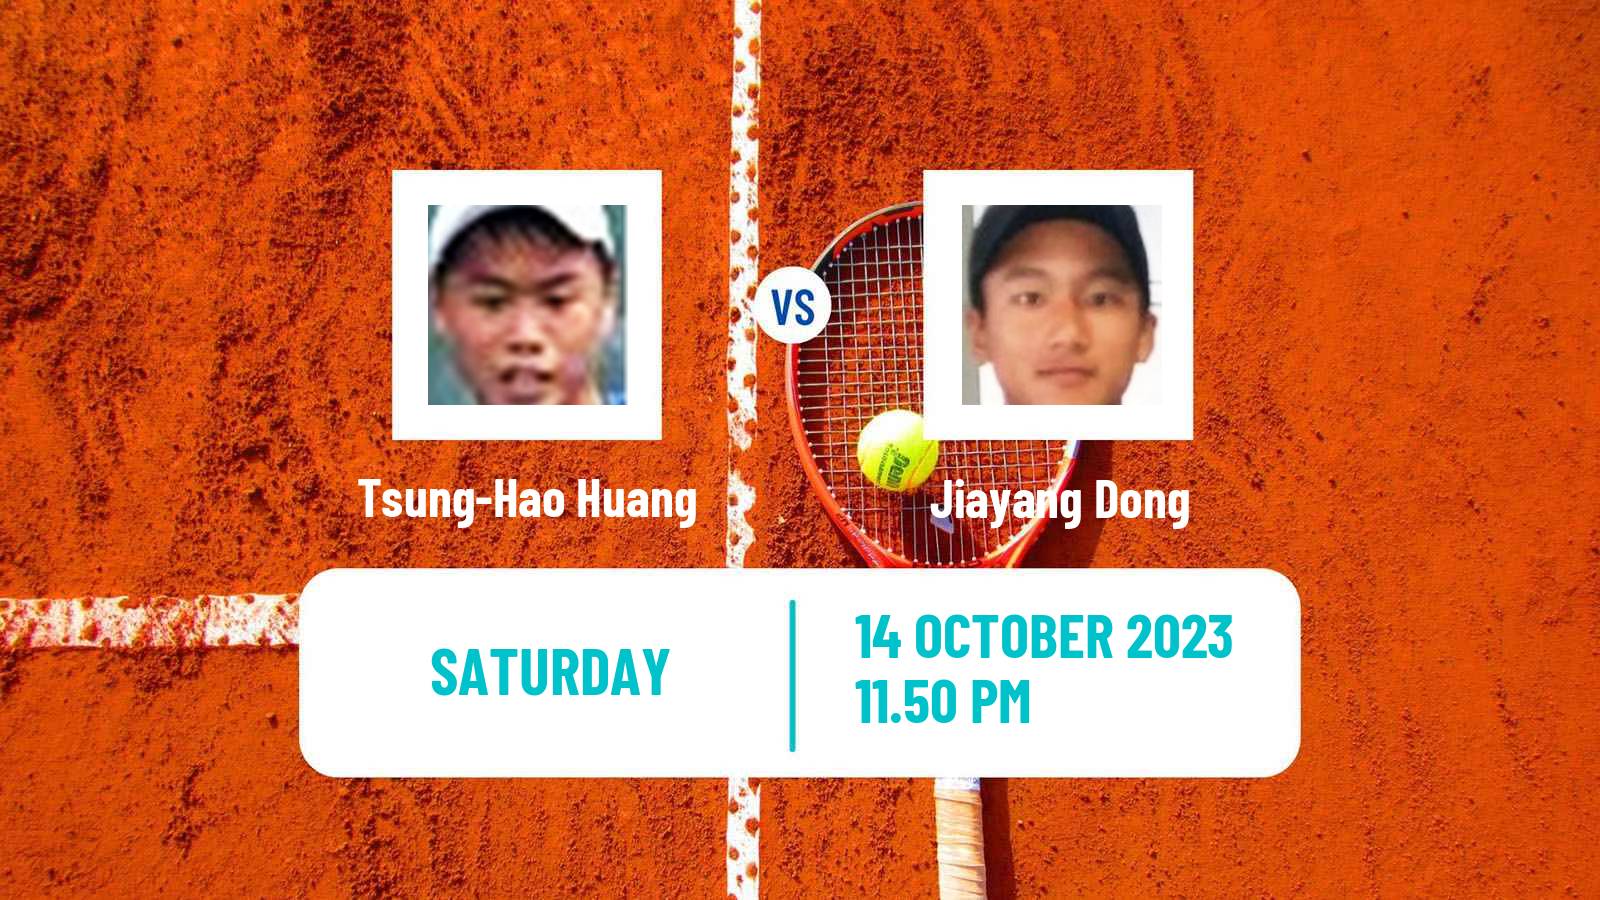 Tennis Shenzhen 3 Challenger Men Tsung-Hao Huang - Jiayang Dong